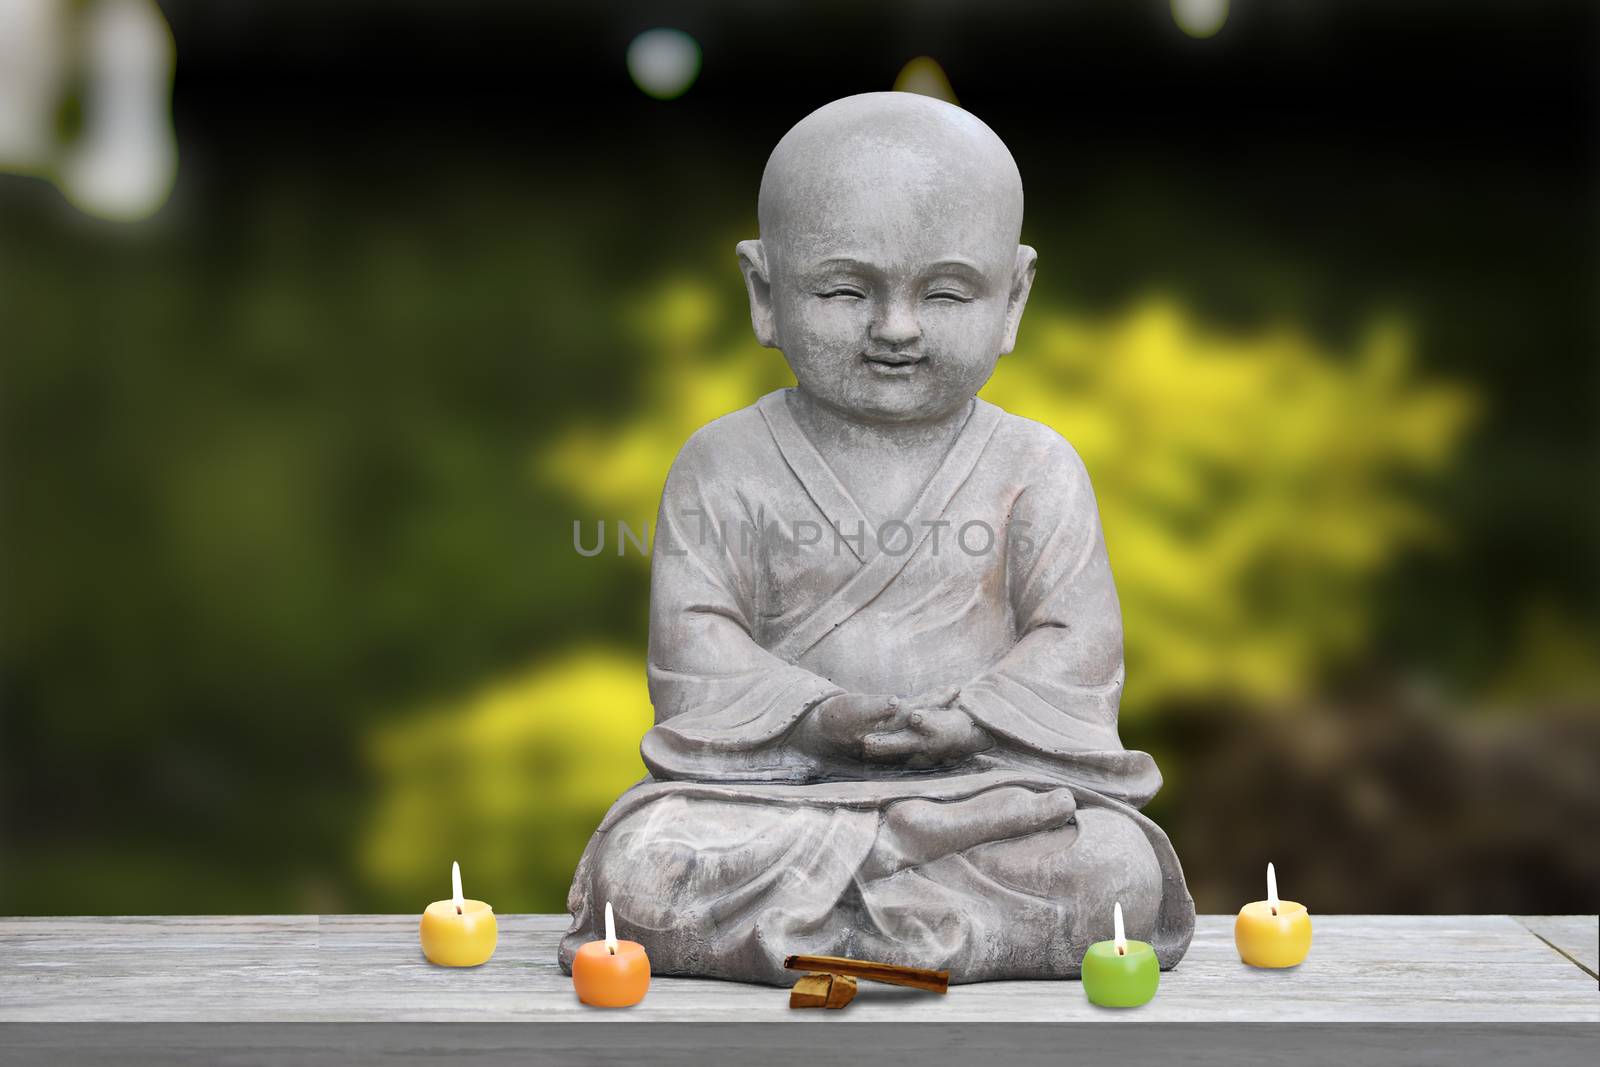 Offering to Buddha boy by bpardofotografia